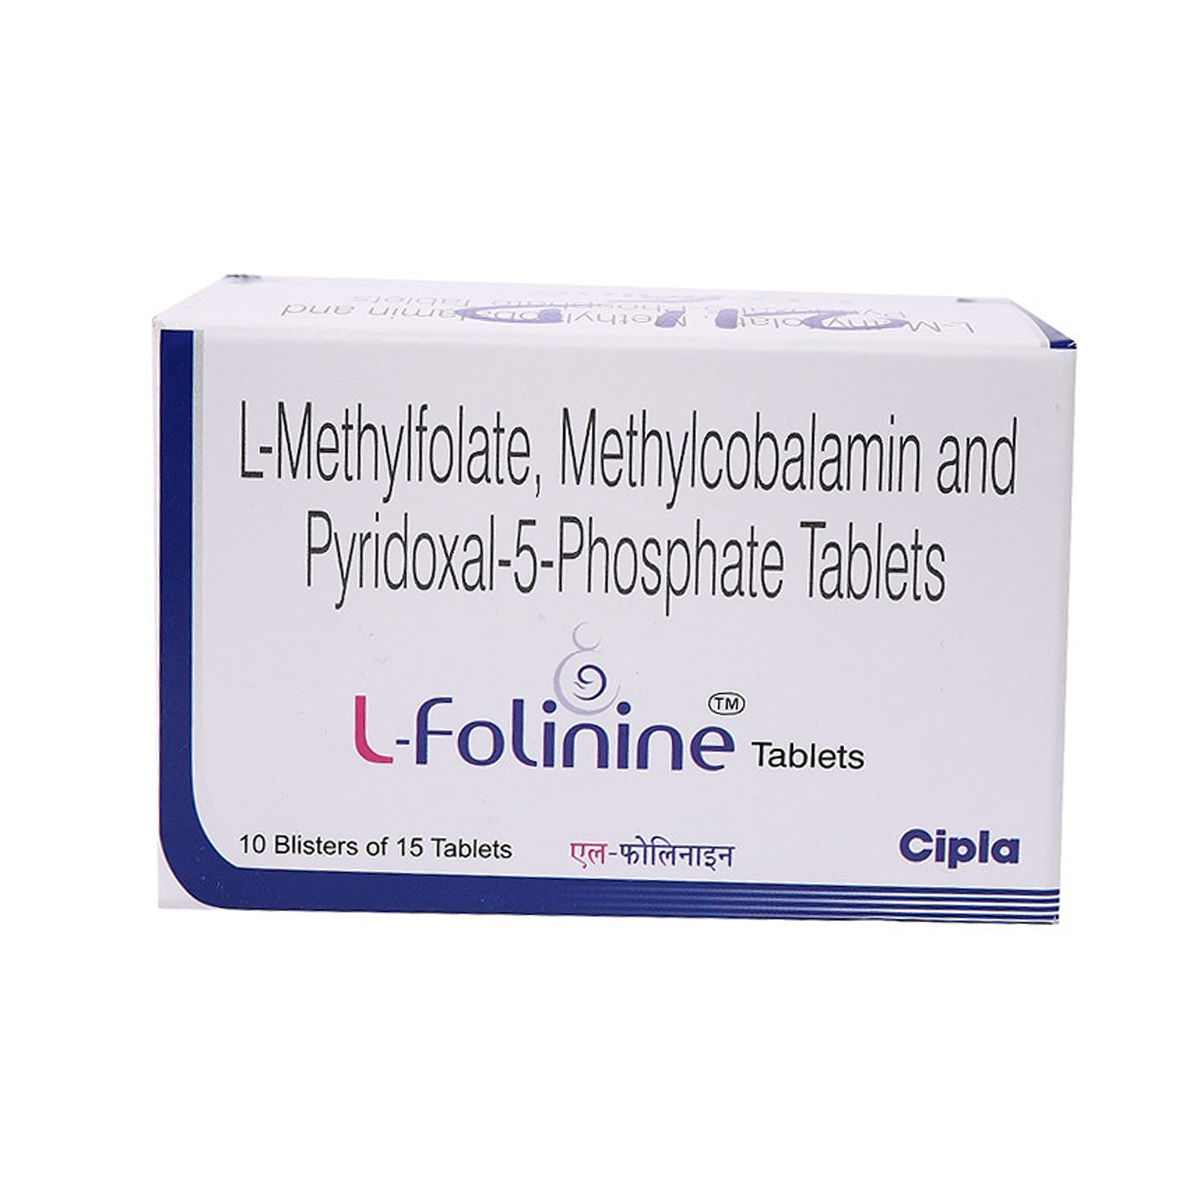 Buy L-Folinine Tablet 15's Online